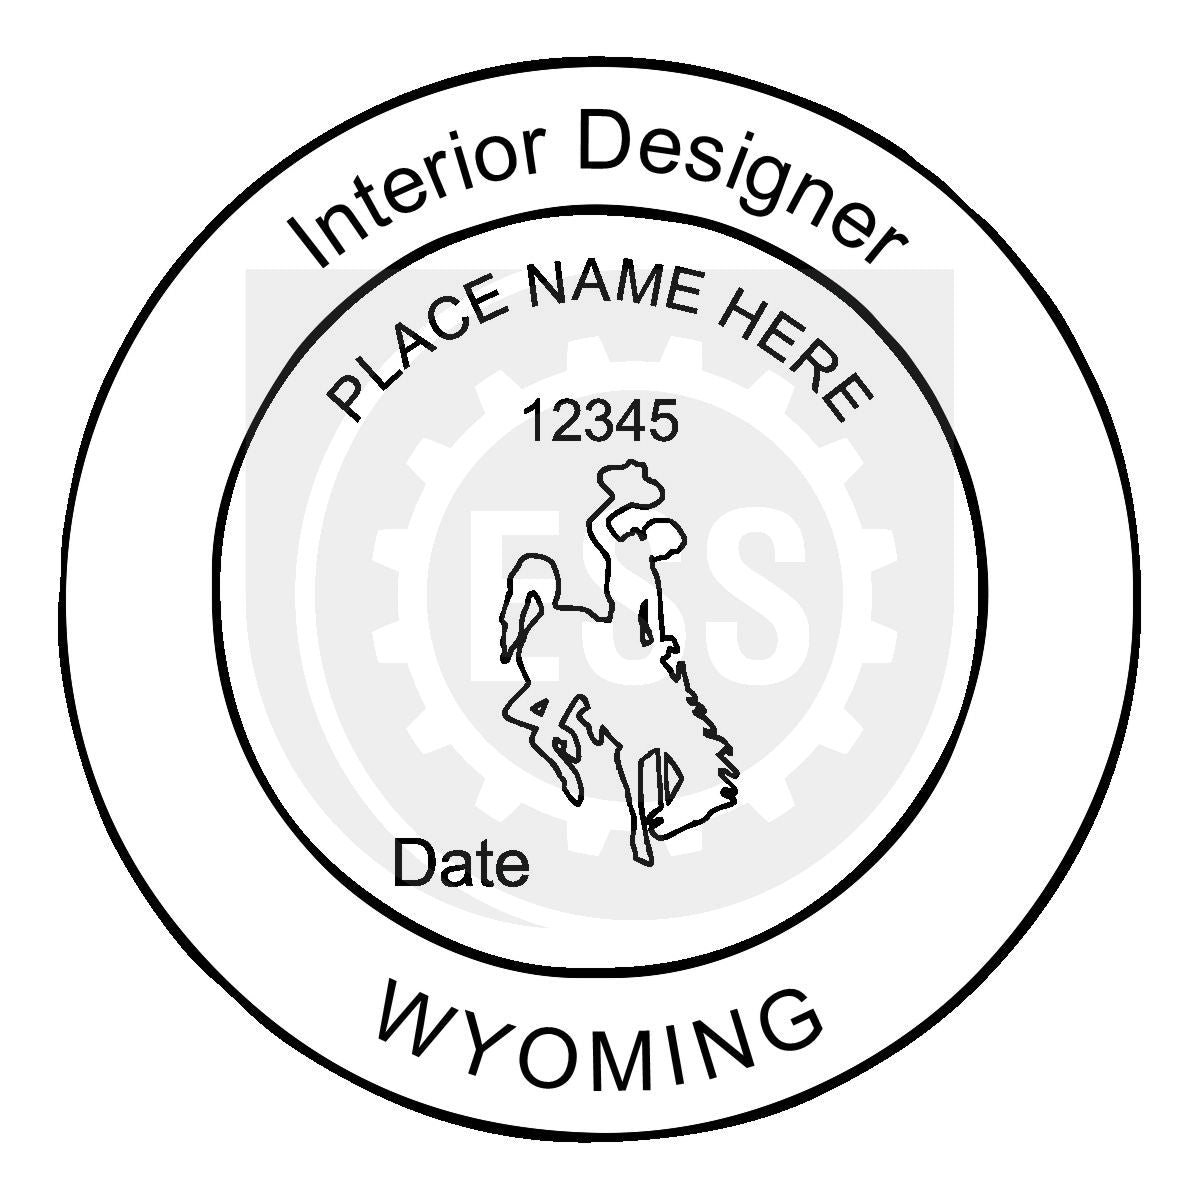 Wyoming Interior Designer Seal Setup